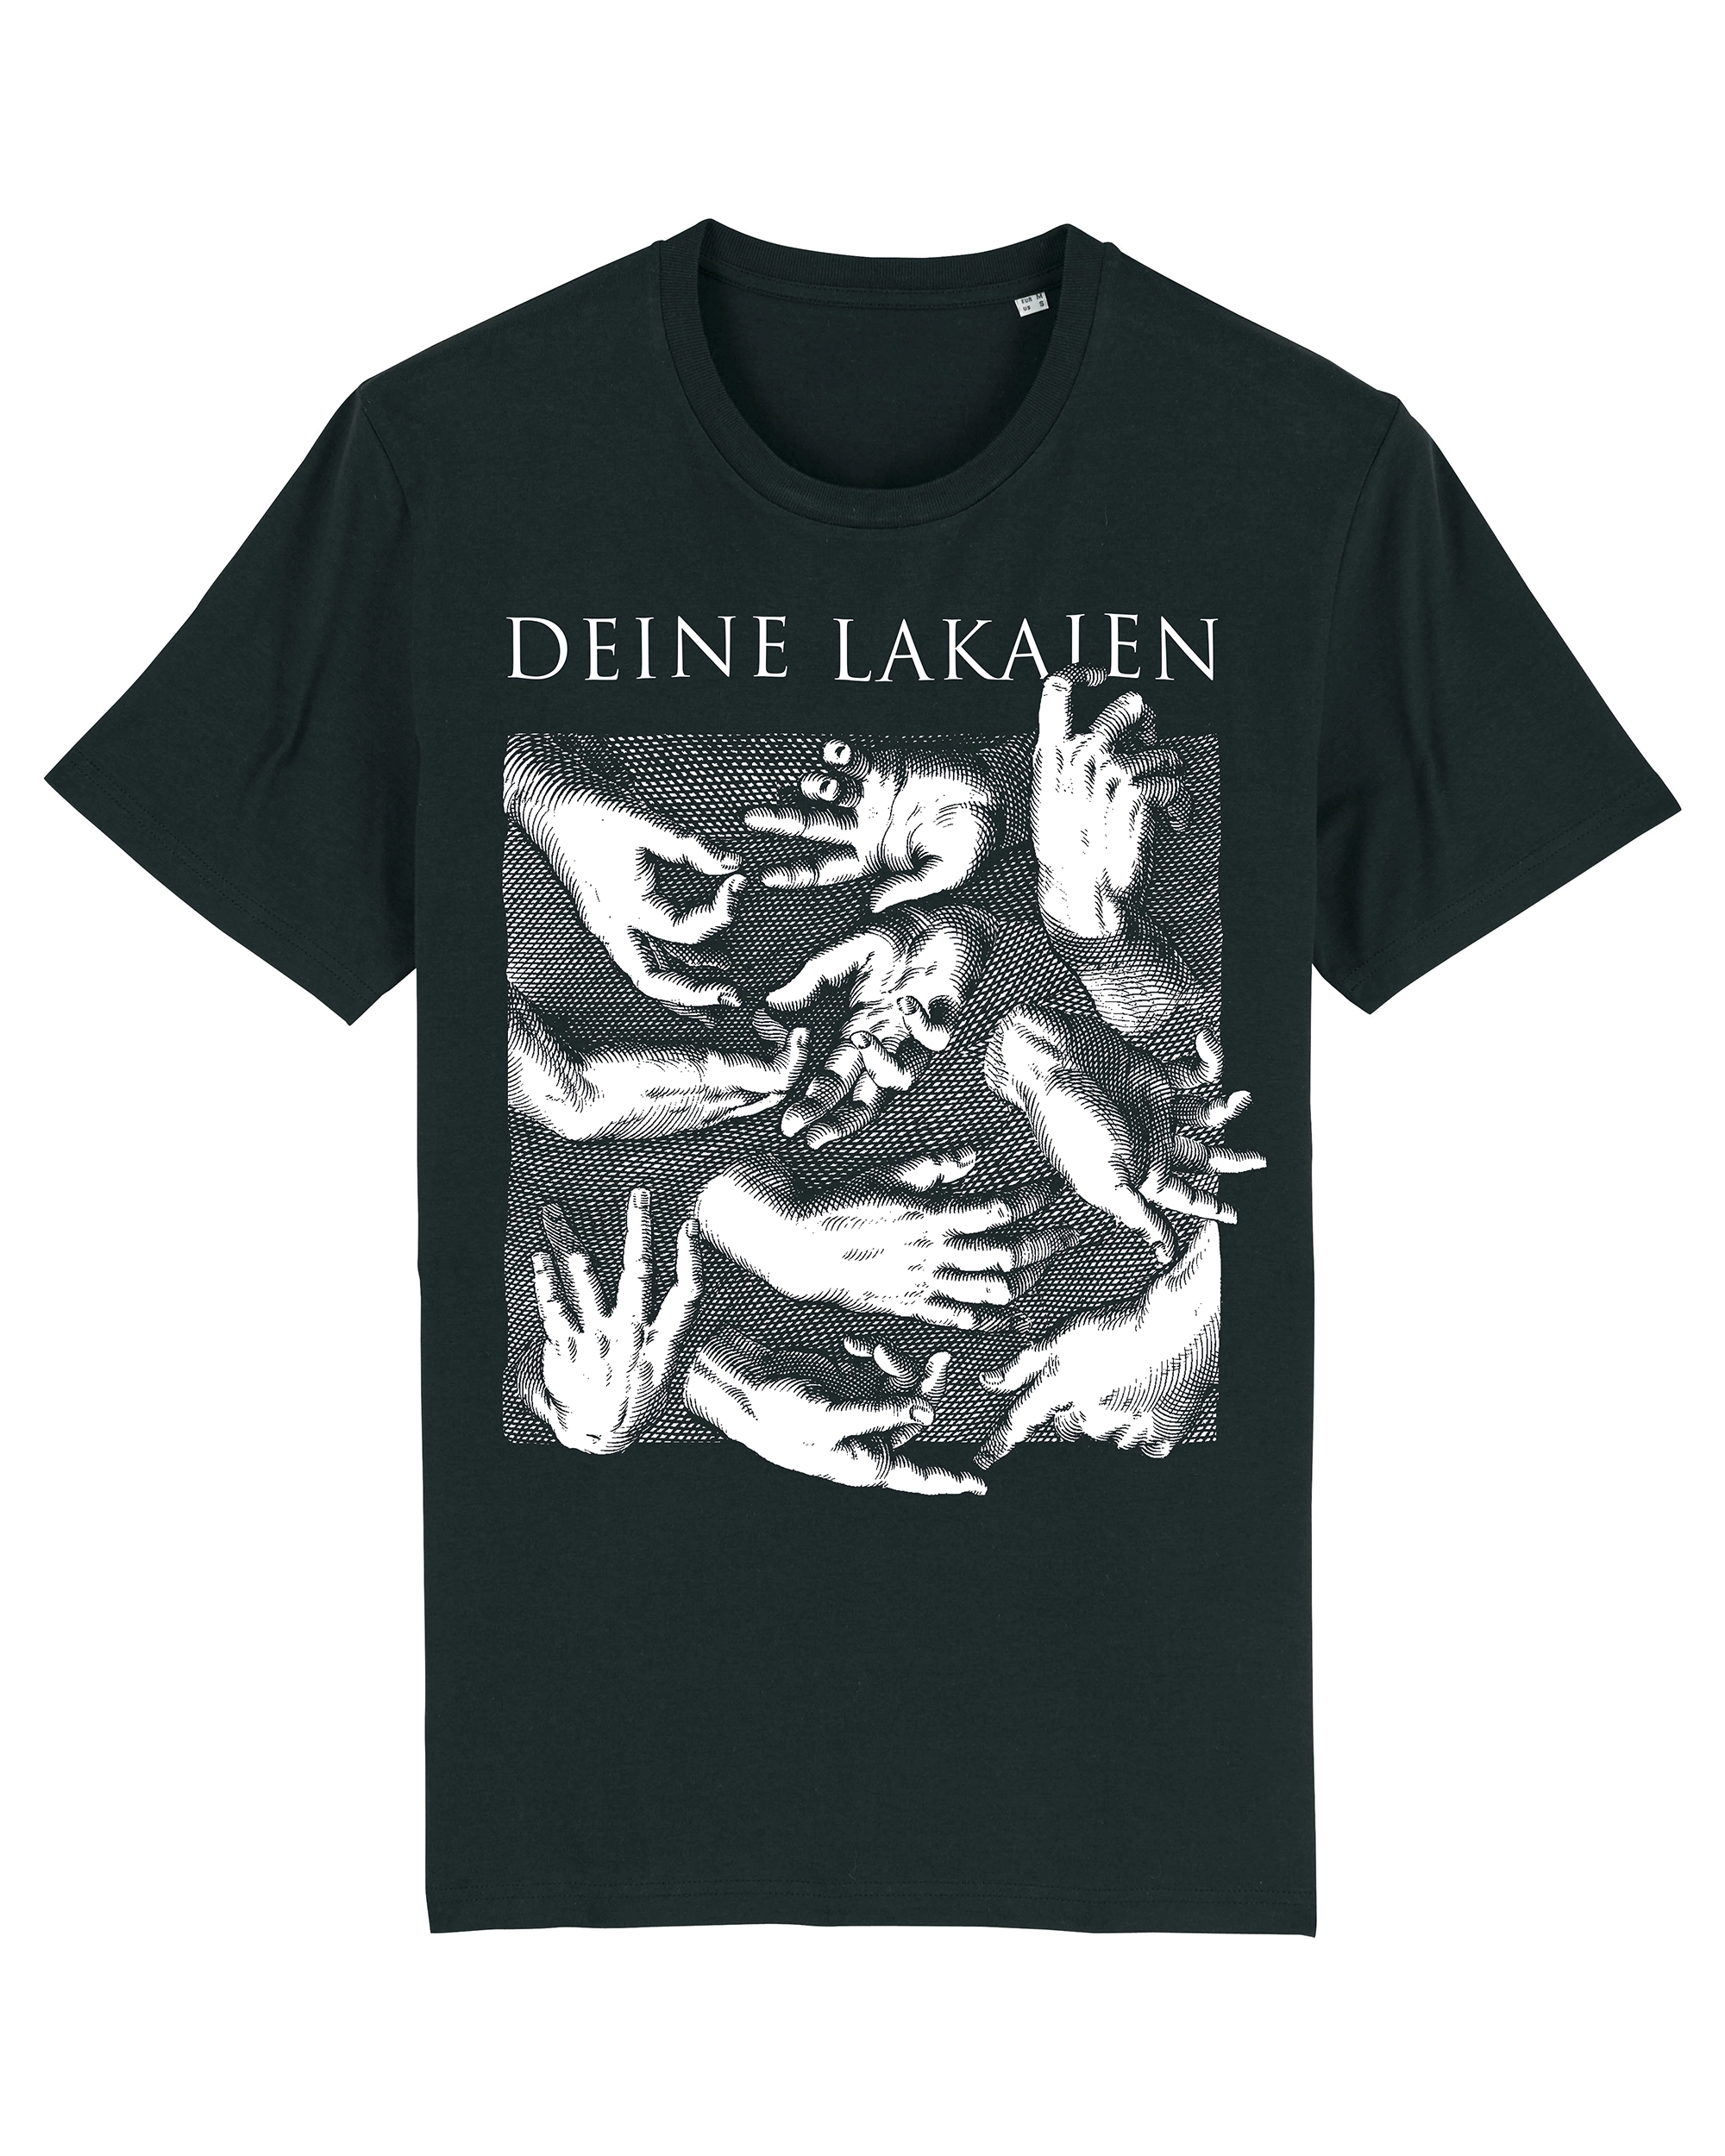 DEINE LAKAIEN - Hands [T-SHIRT]